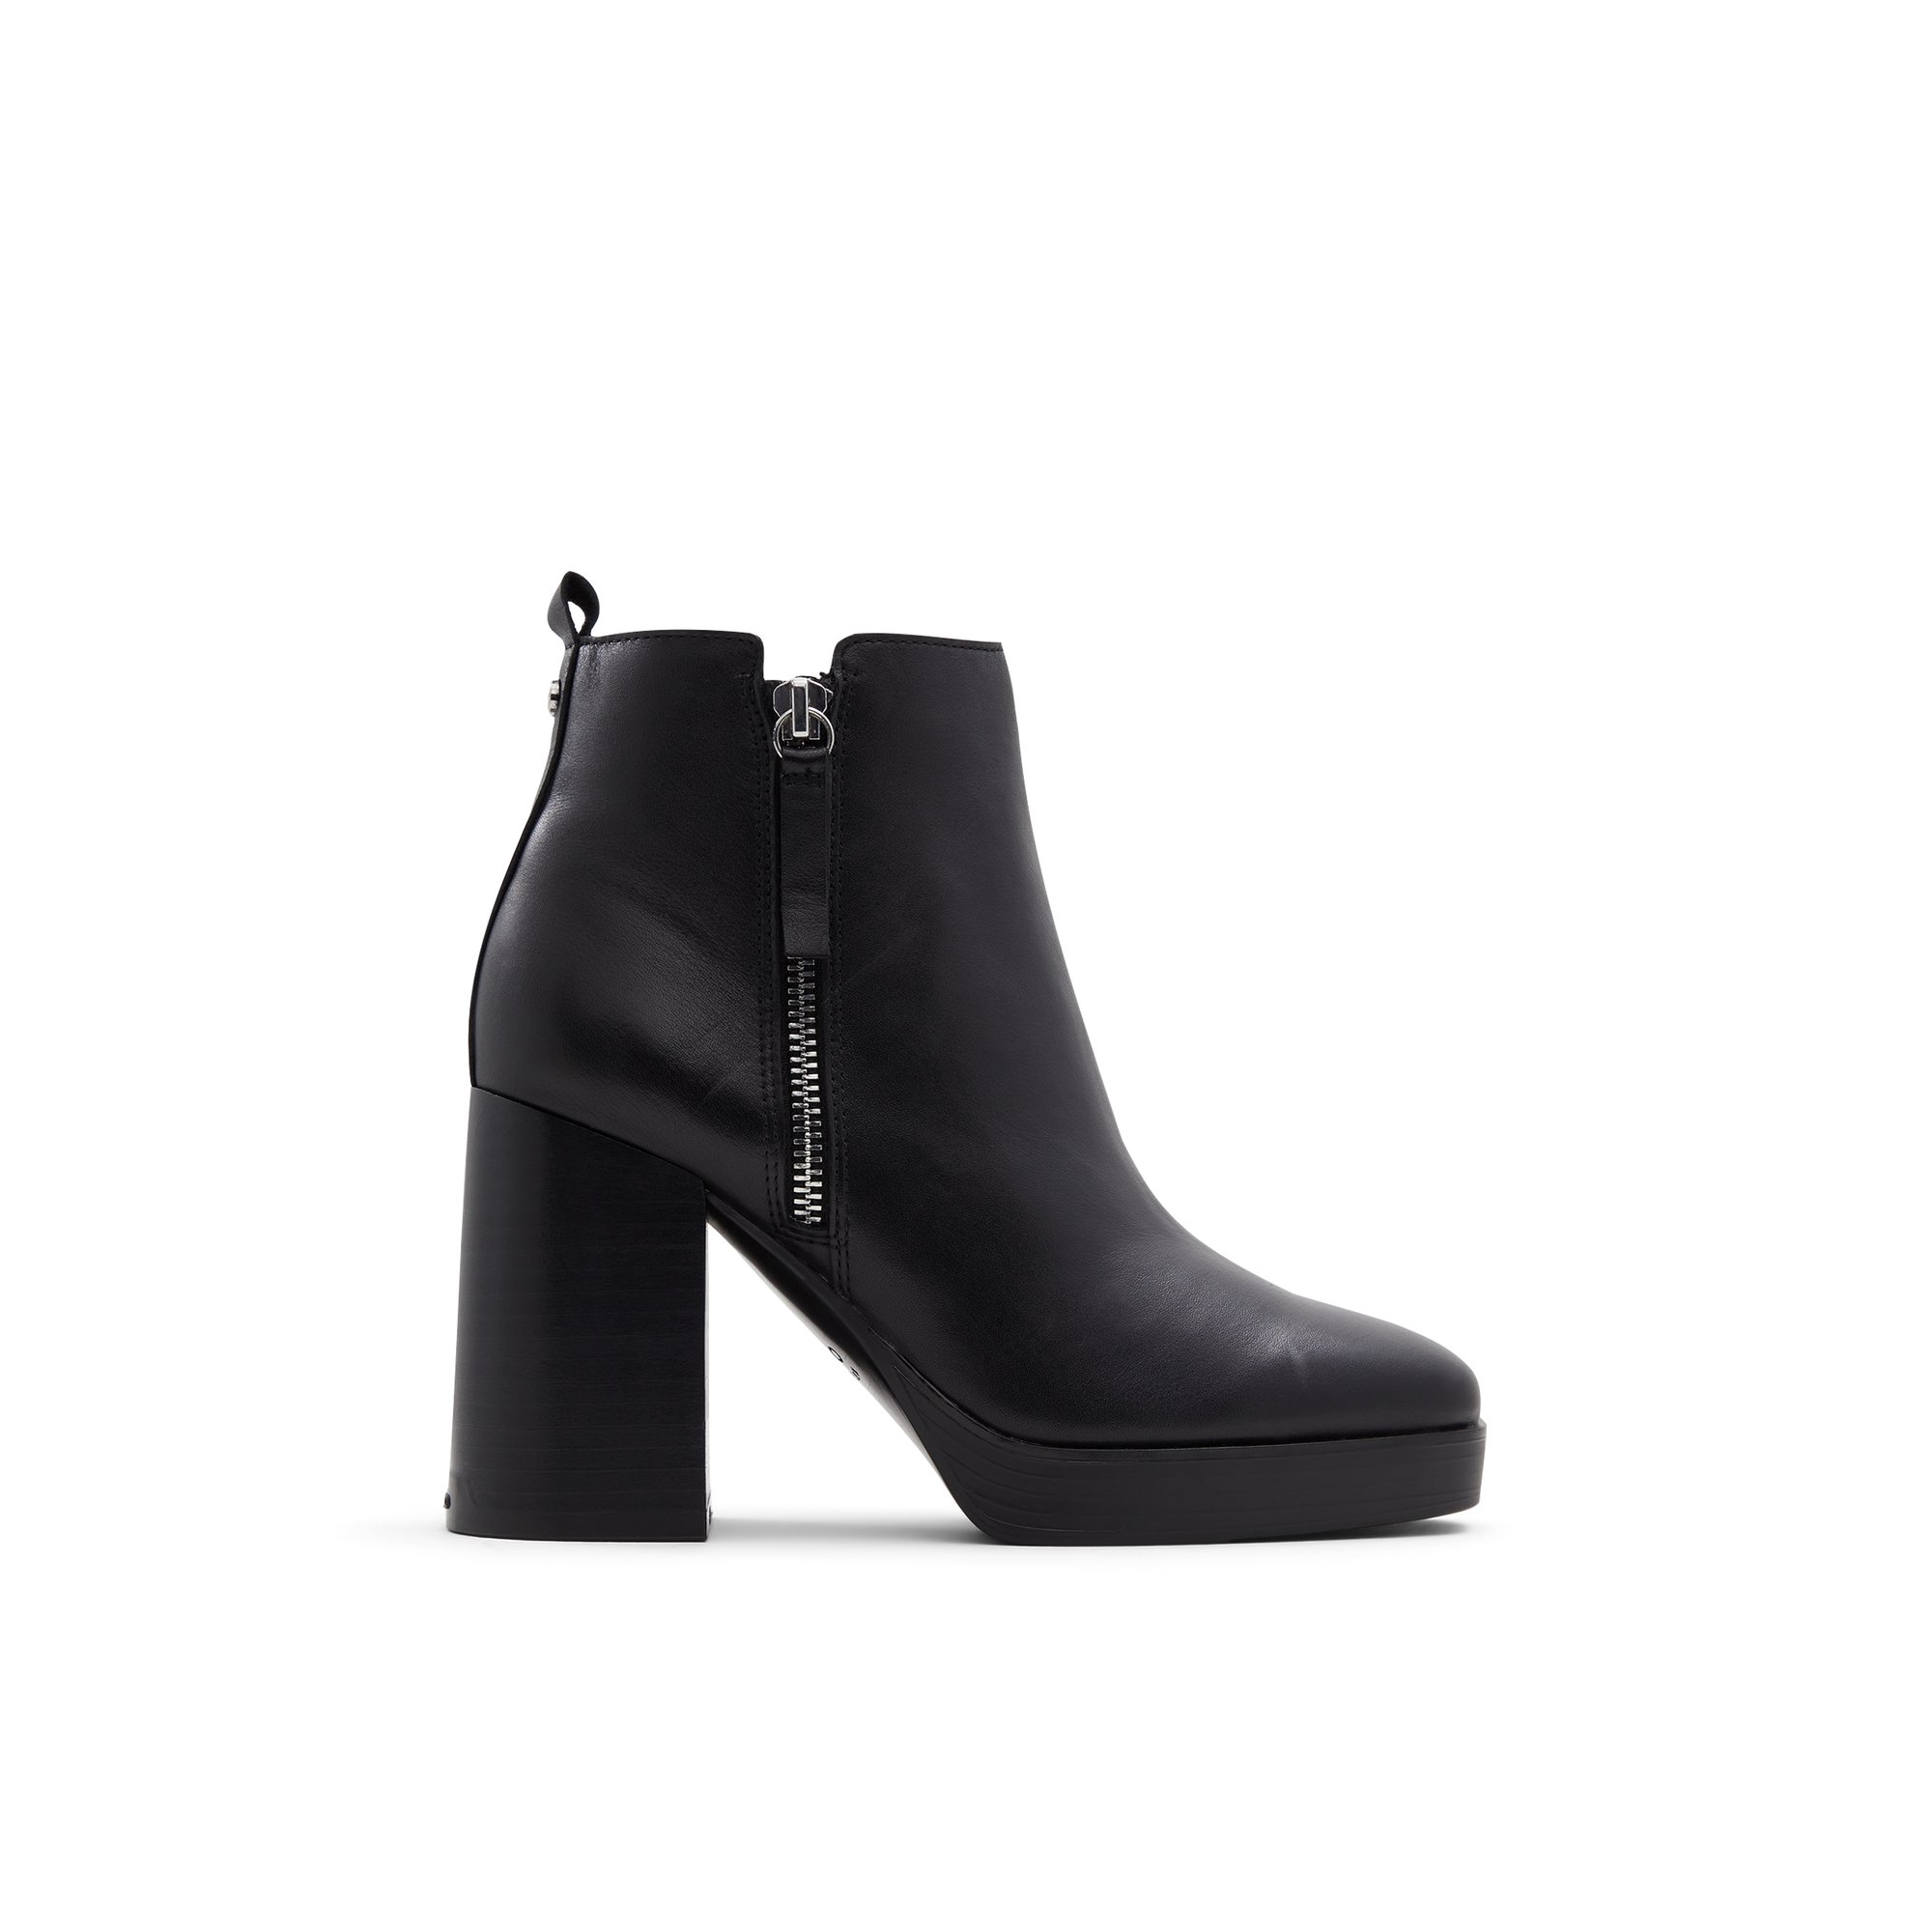 ALDO Cremella - Women's Boots Ankle - Black